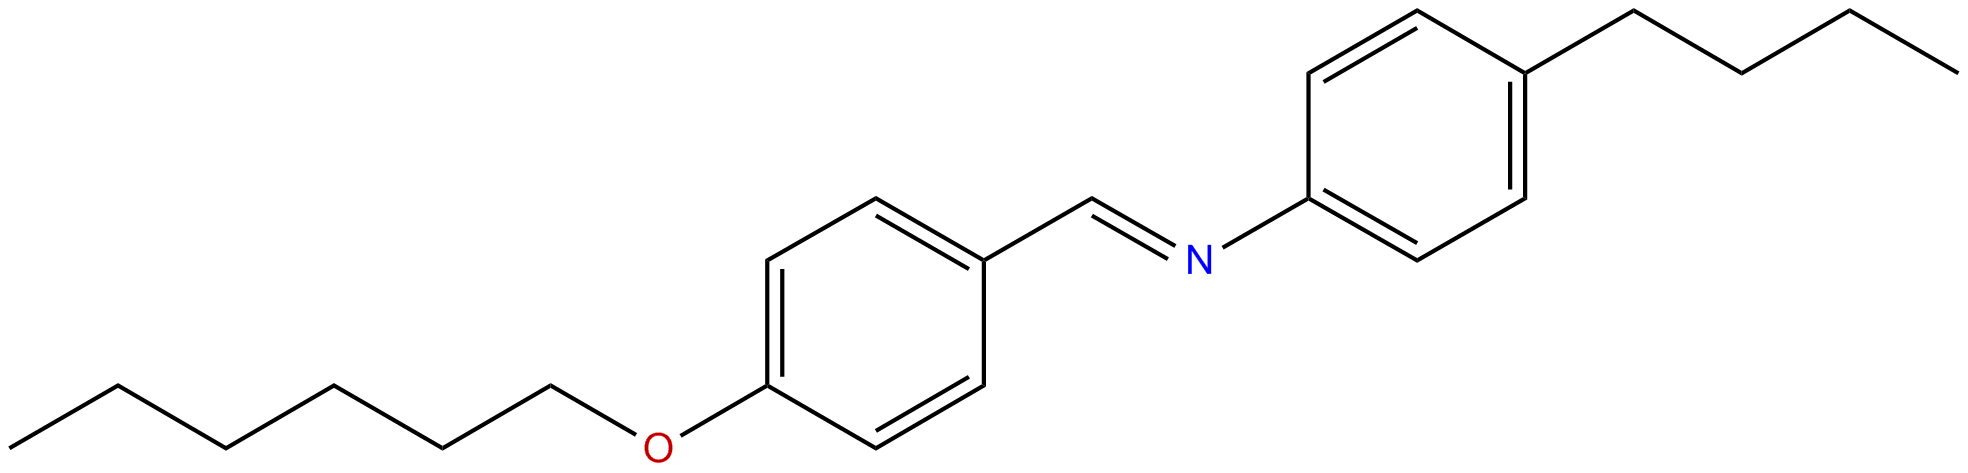 Image of N-butyl-N-[(4-hexyloxyphenyl)methylene]benzenamine